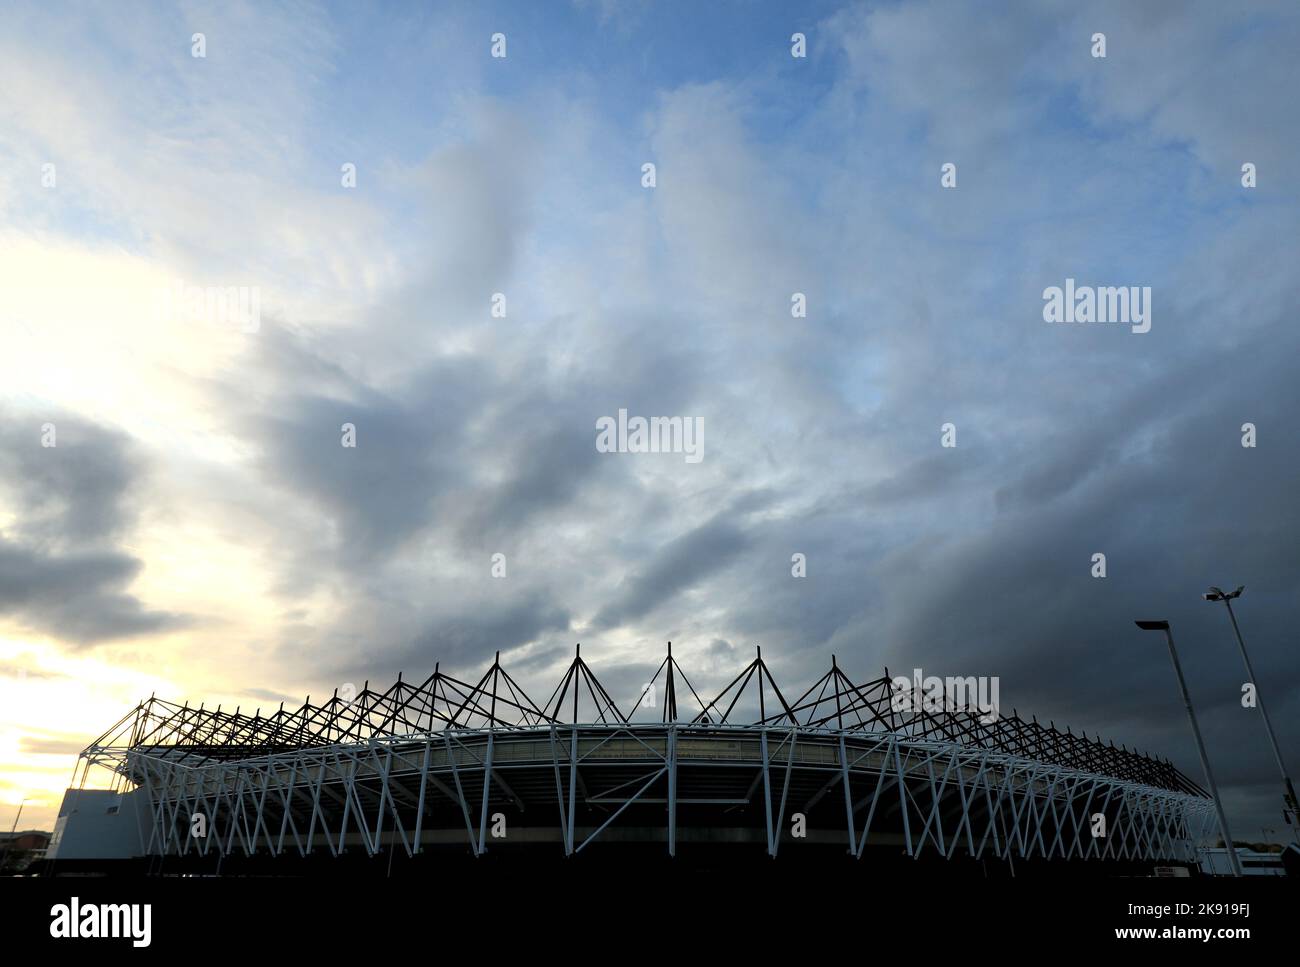 Una vista generale dello stadio davanti alla partita Sky Bet League One allo stadio Pride Park, Derby. Data immagine: Martedì 25 ottobre 2022. Foto Stock